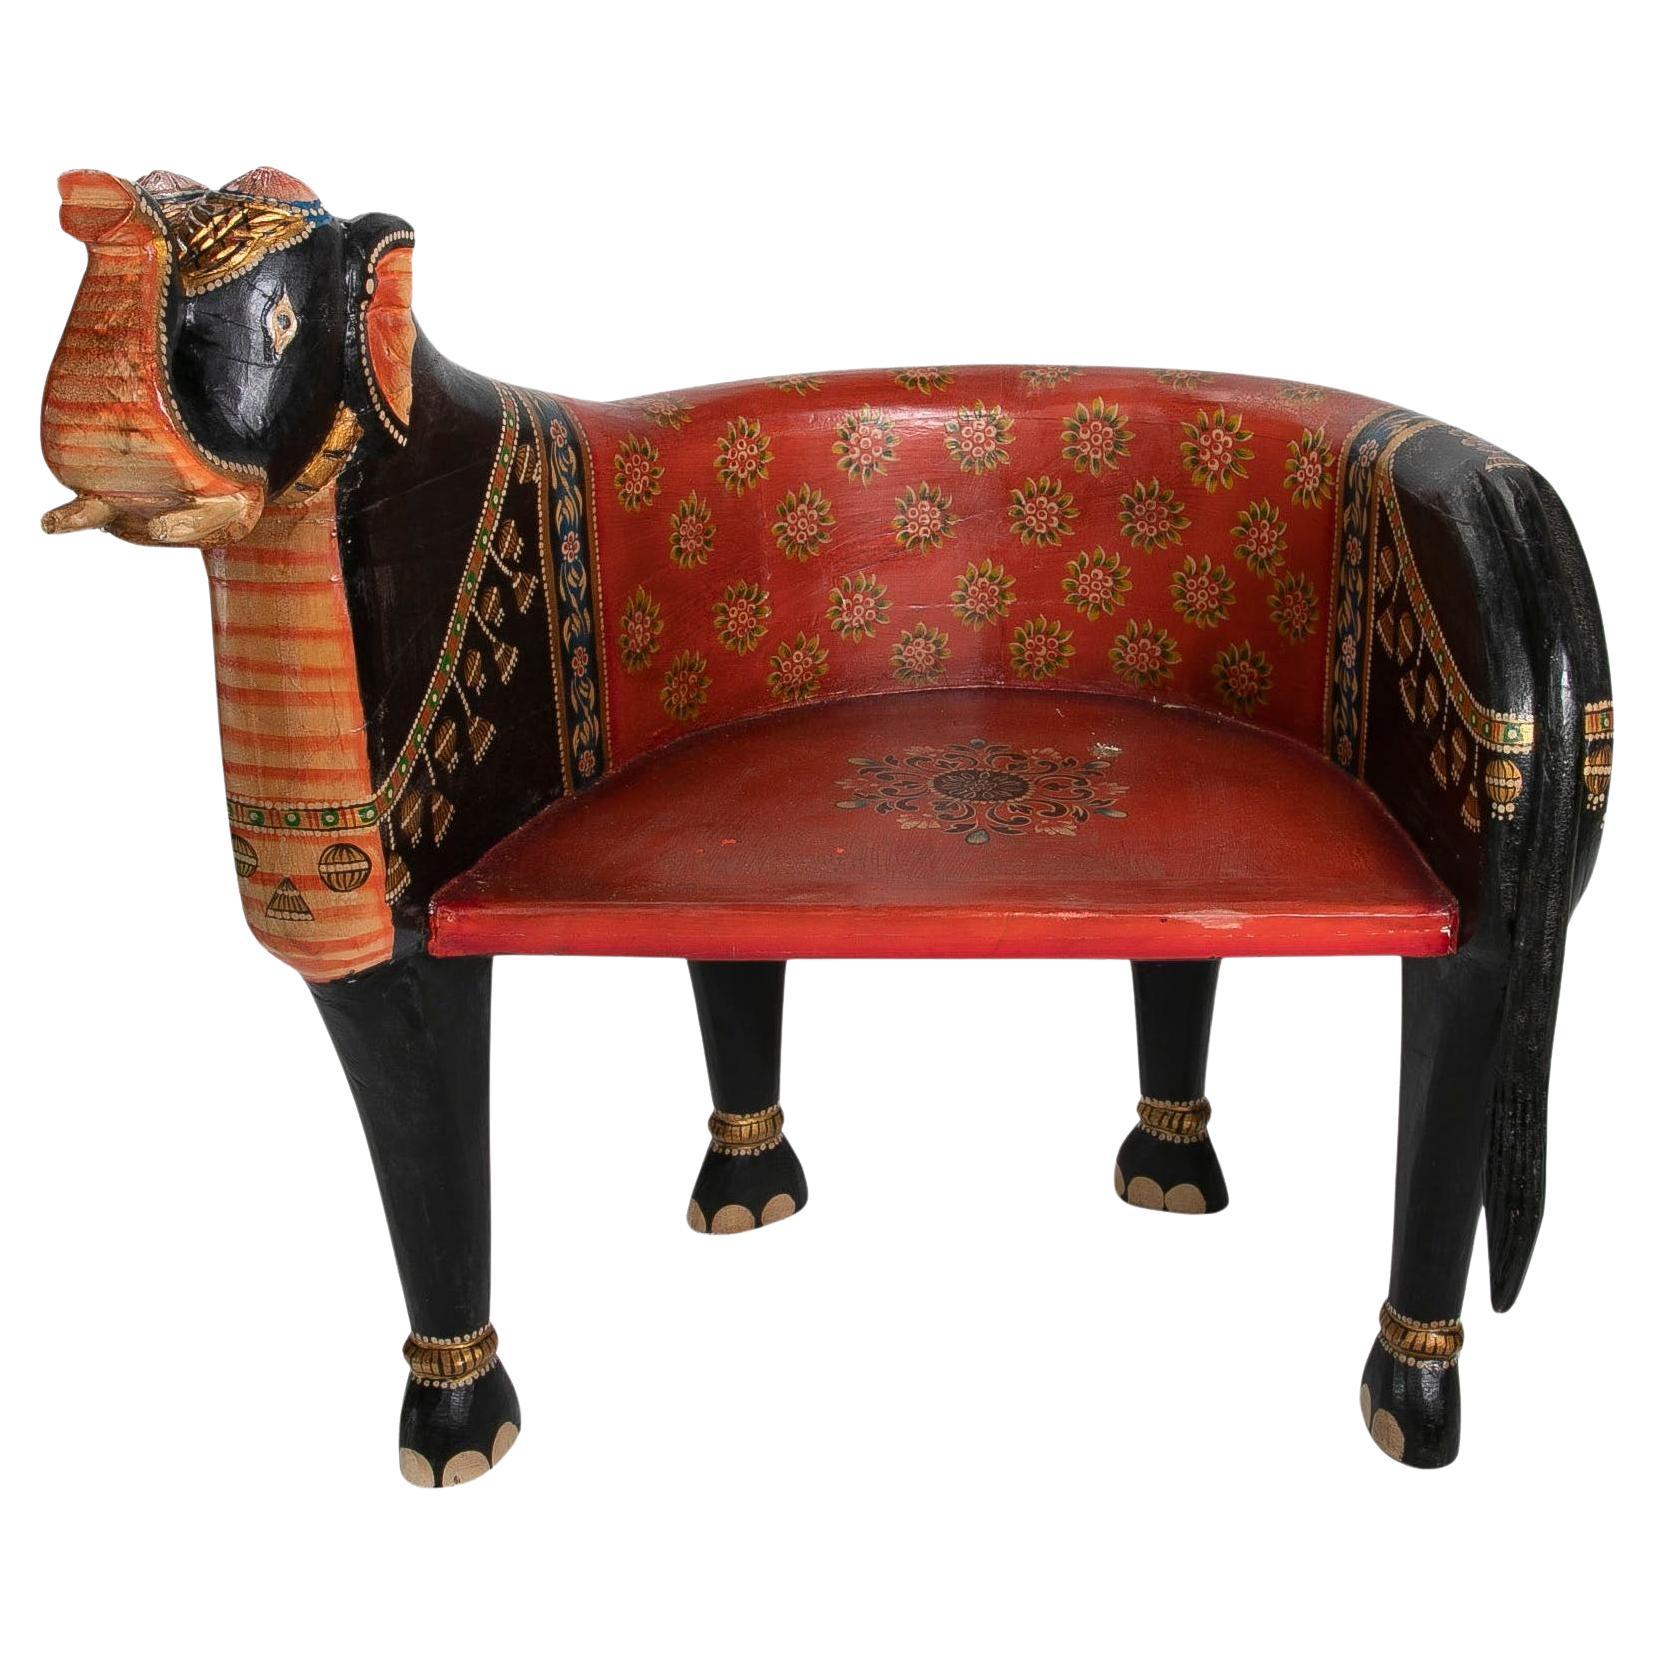 Fauteuil éléphant en bois sculpté et peint à la main